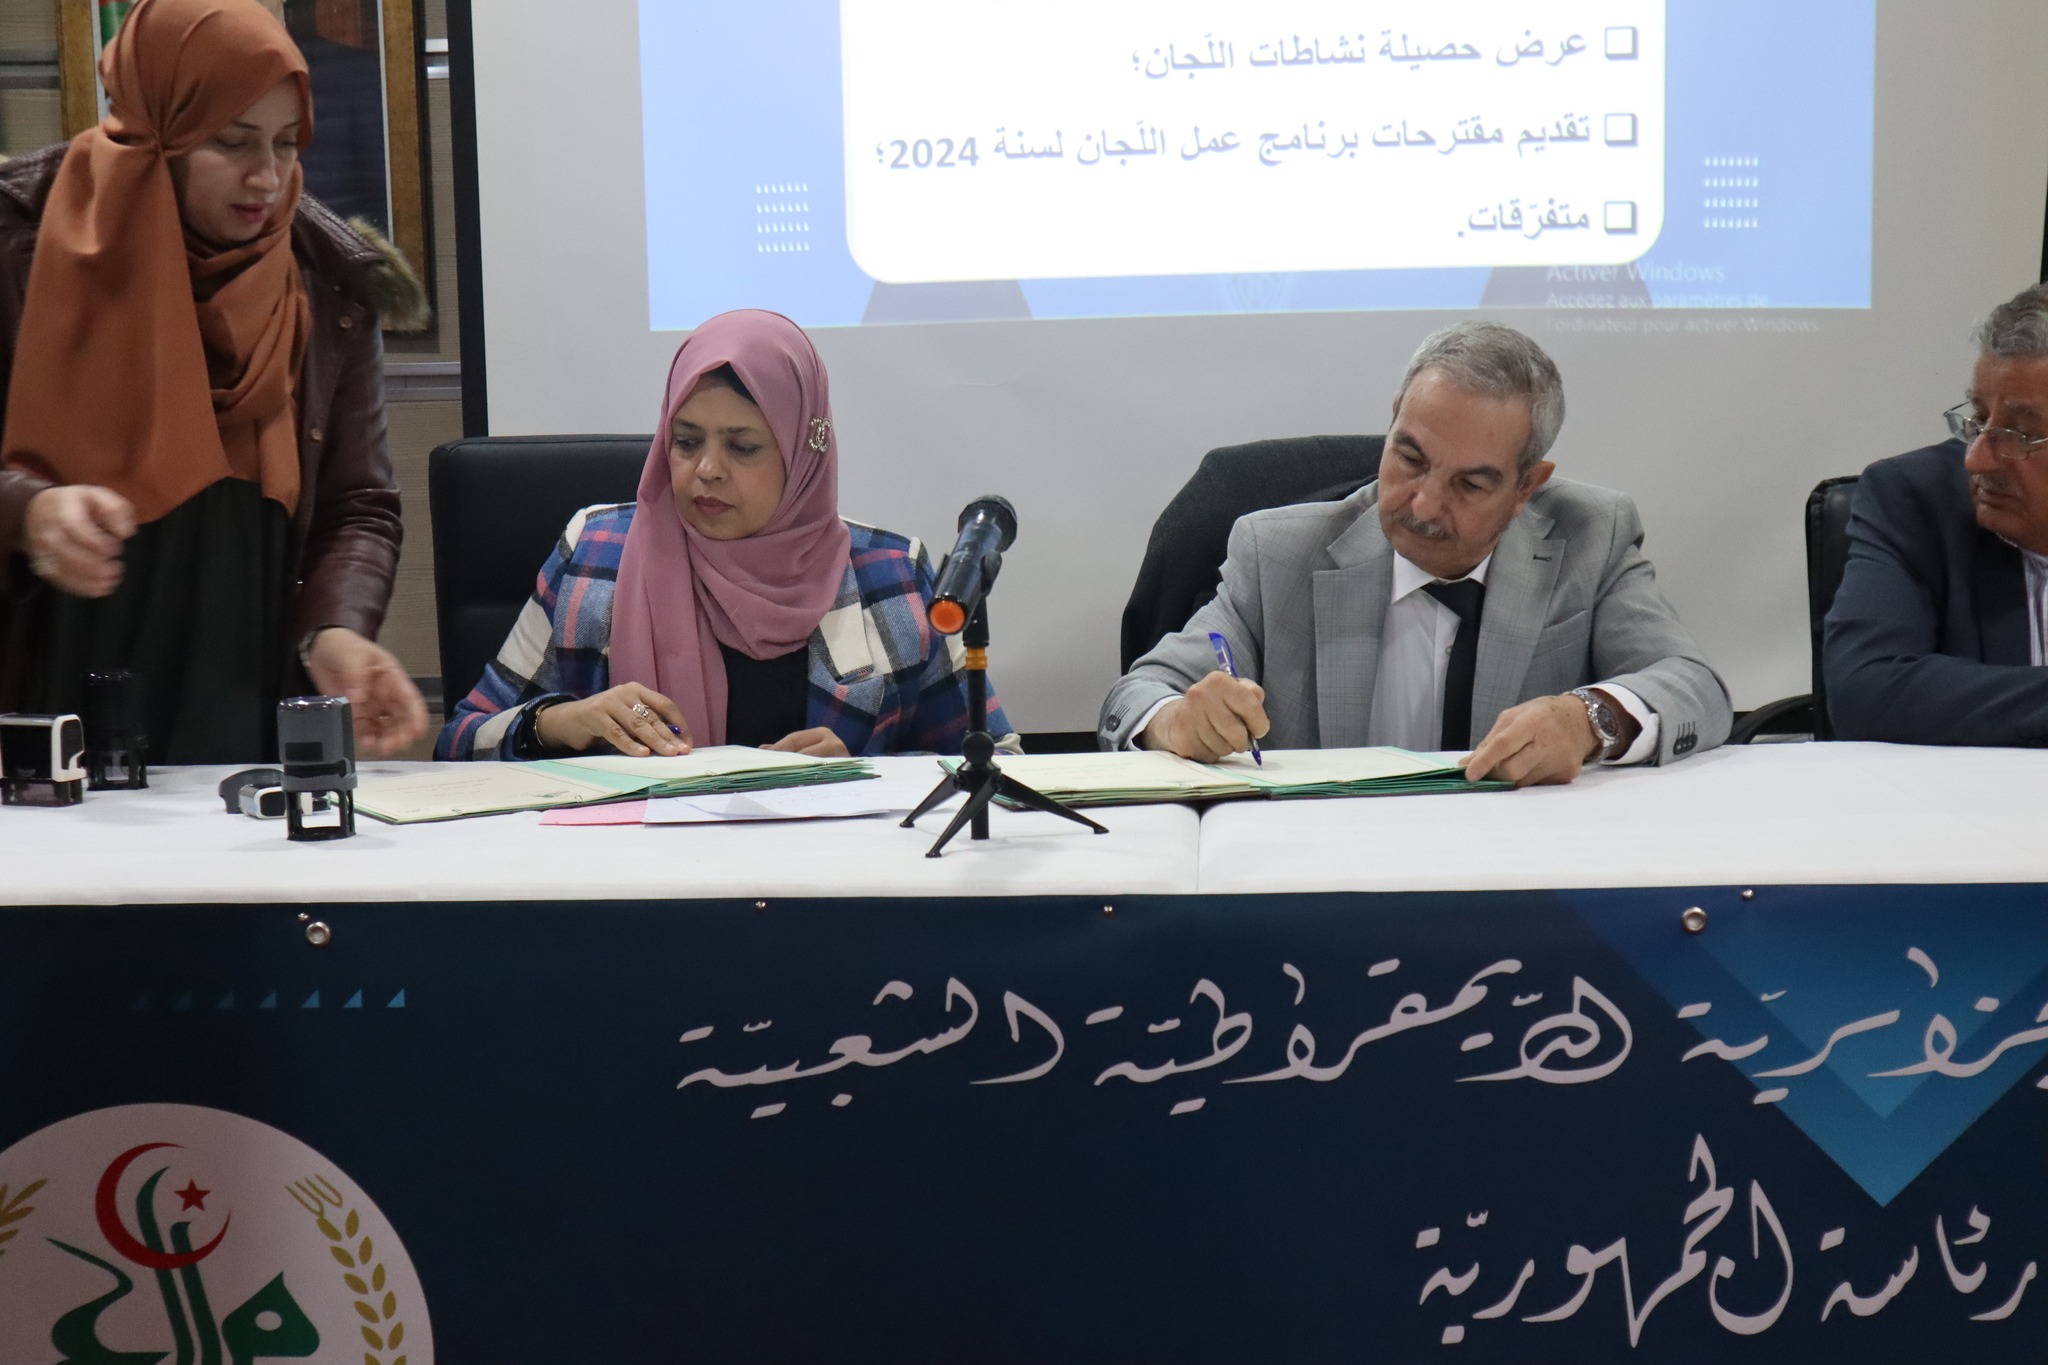 إمضاء اتّفافية شراكة بين المجلس الأعلى للغة العربيّة وأكاديميّة الوهرانيّ للدّراسات العلميّة والتّفاعل الثّقافيّ، ولاية وهران.